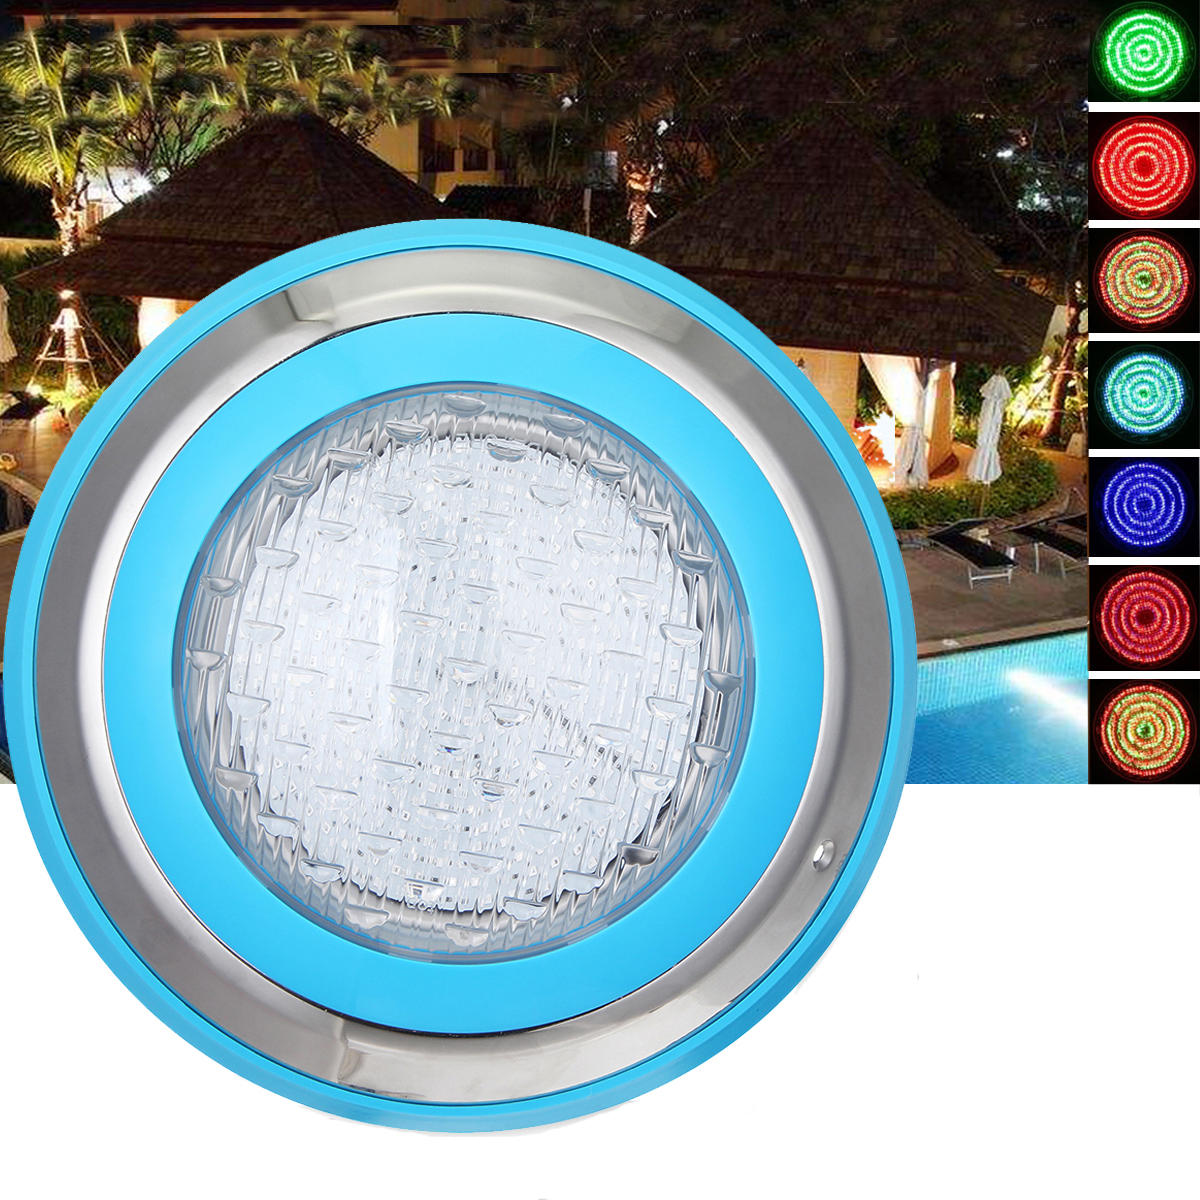 12V 35W Swimmingpool LED Licht im Freienlaterne-wasserdichte Unterwasserlampe mit Fernbedienung